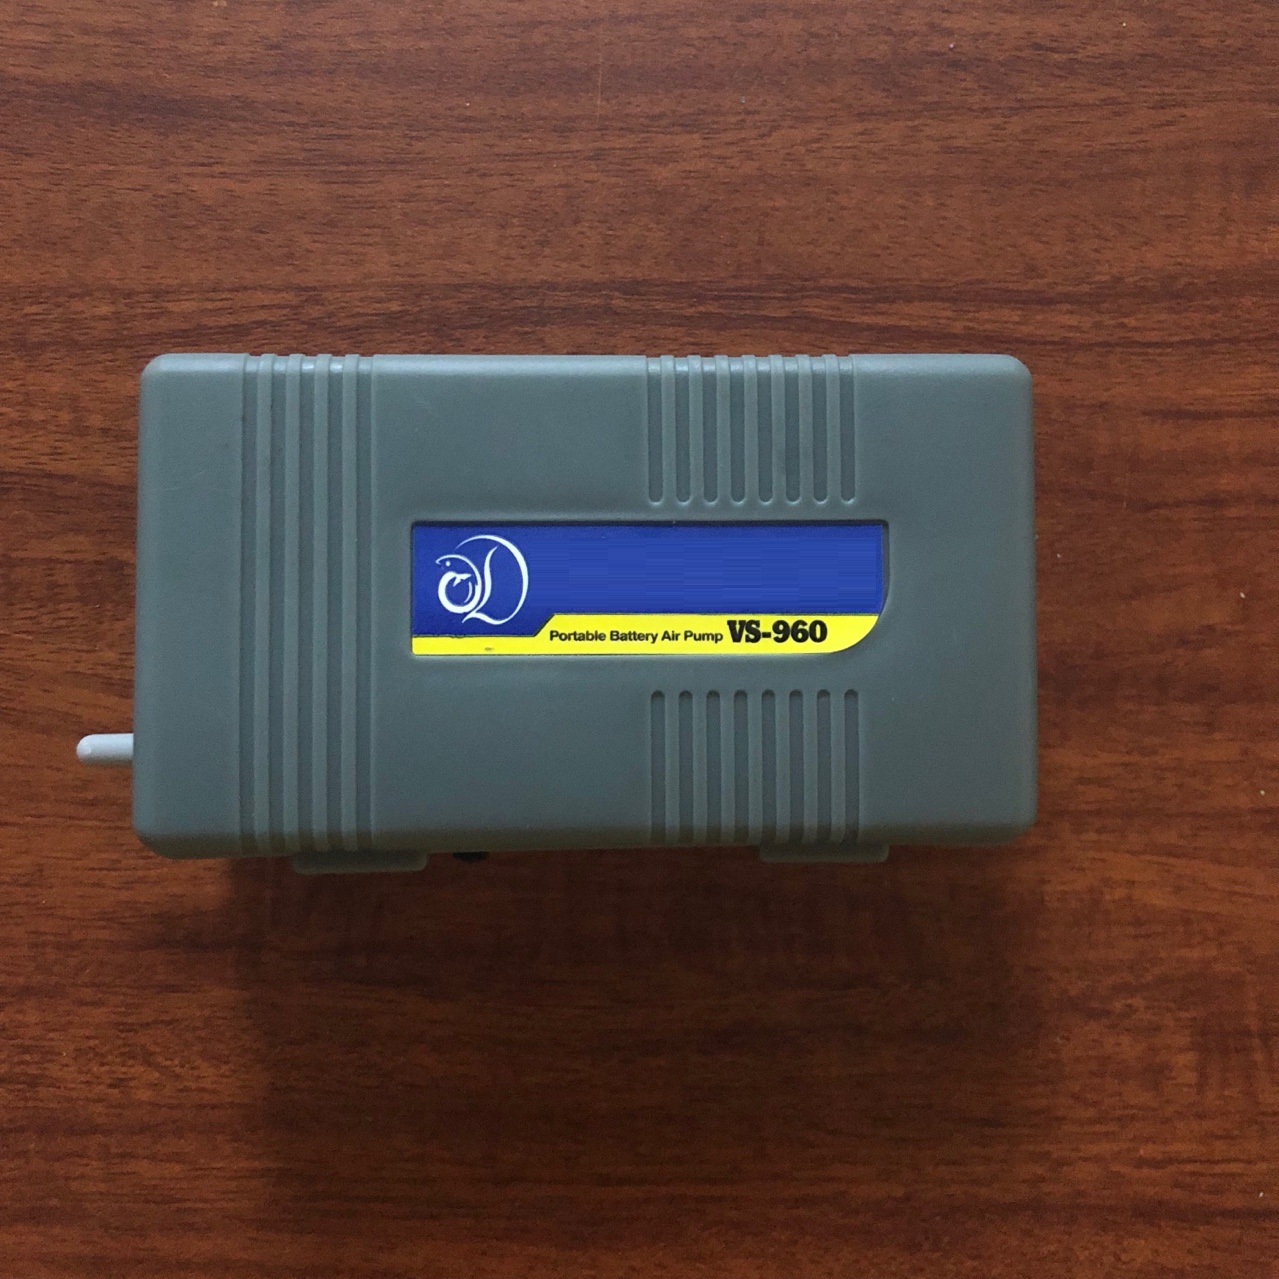 Máy sủi khí chạy pin VS-960